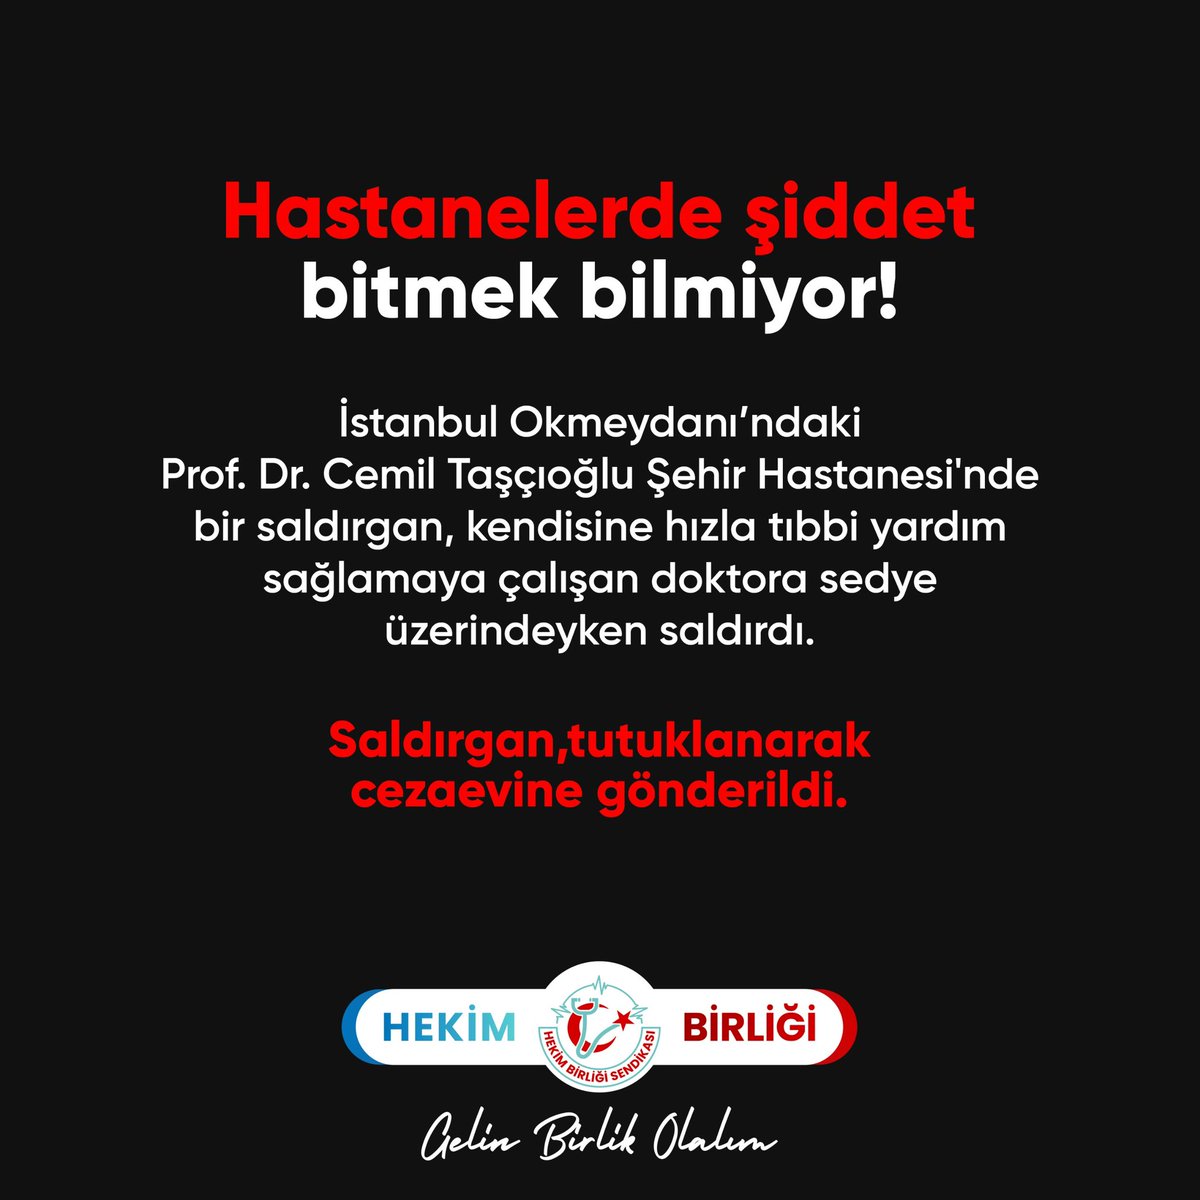 Hastanelerde şiddet bitmek bilmiyor!

İstanbul Okmeydanı’ndaki Prof. Dr. Cemil Taşçıoğlu Şehir Hastanesi'nde bir saldırgan, kendisine hızla tıbbi yardım sağlamaya çalışan doktora sedye üzerindeyken saldırdı.

Saldırgan, tutuklanarak cezaevine gönderildi.

Şifa veren ele vurulmaz.